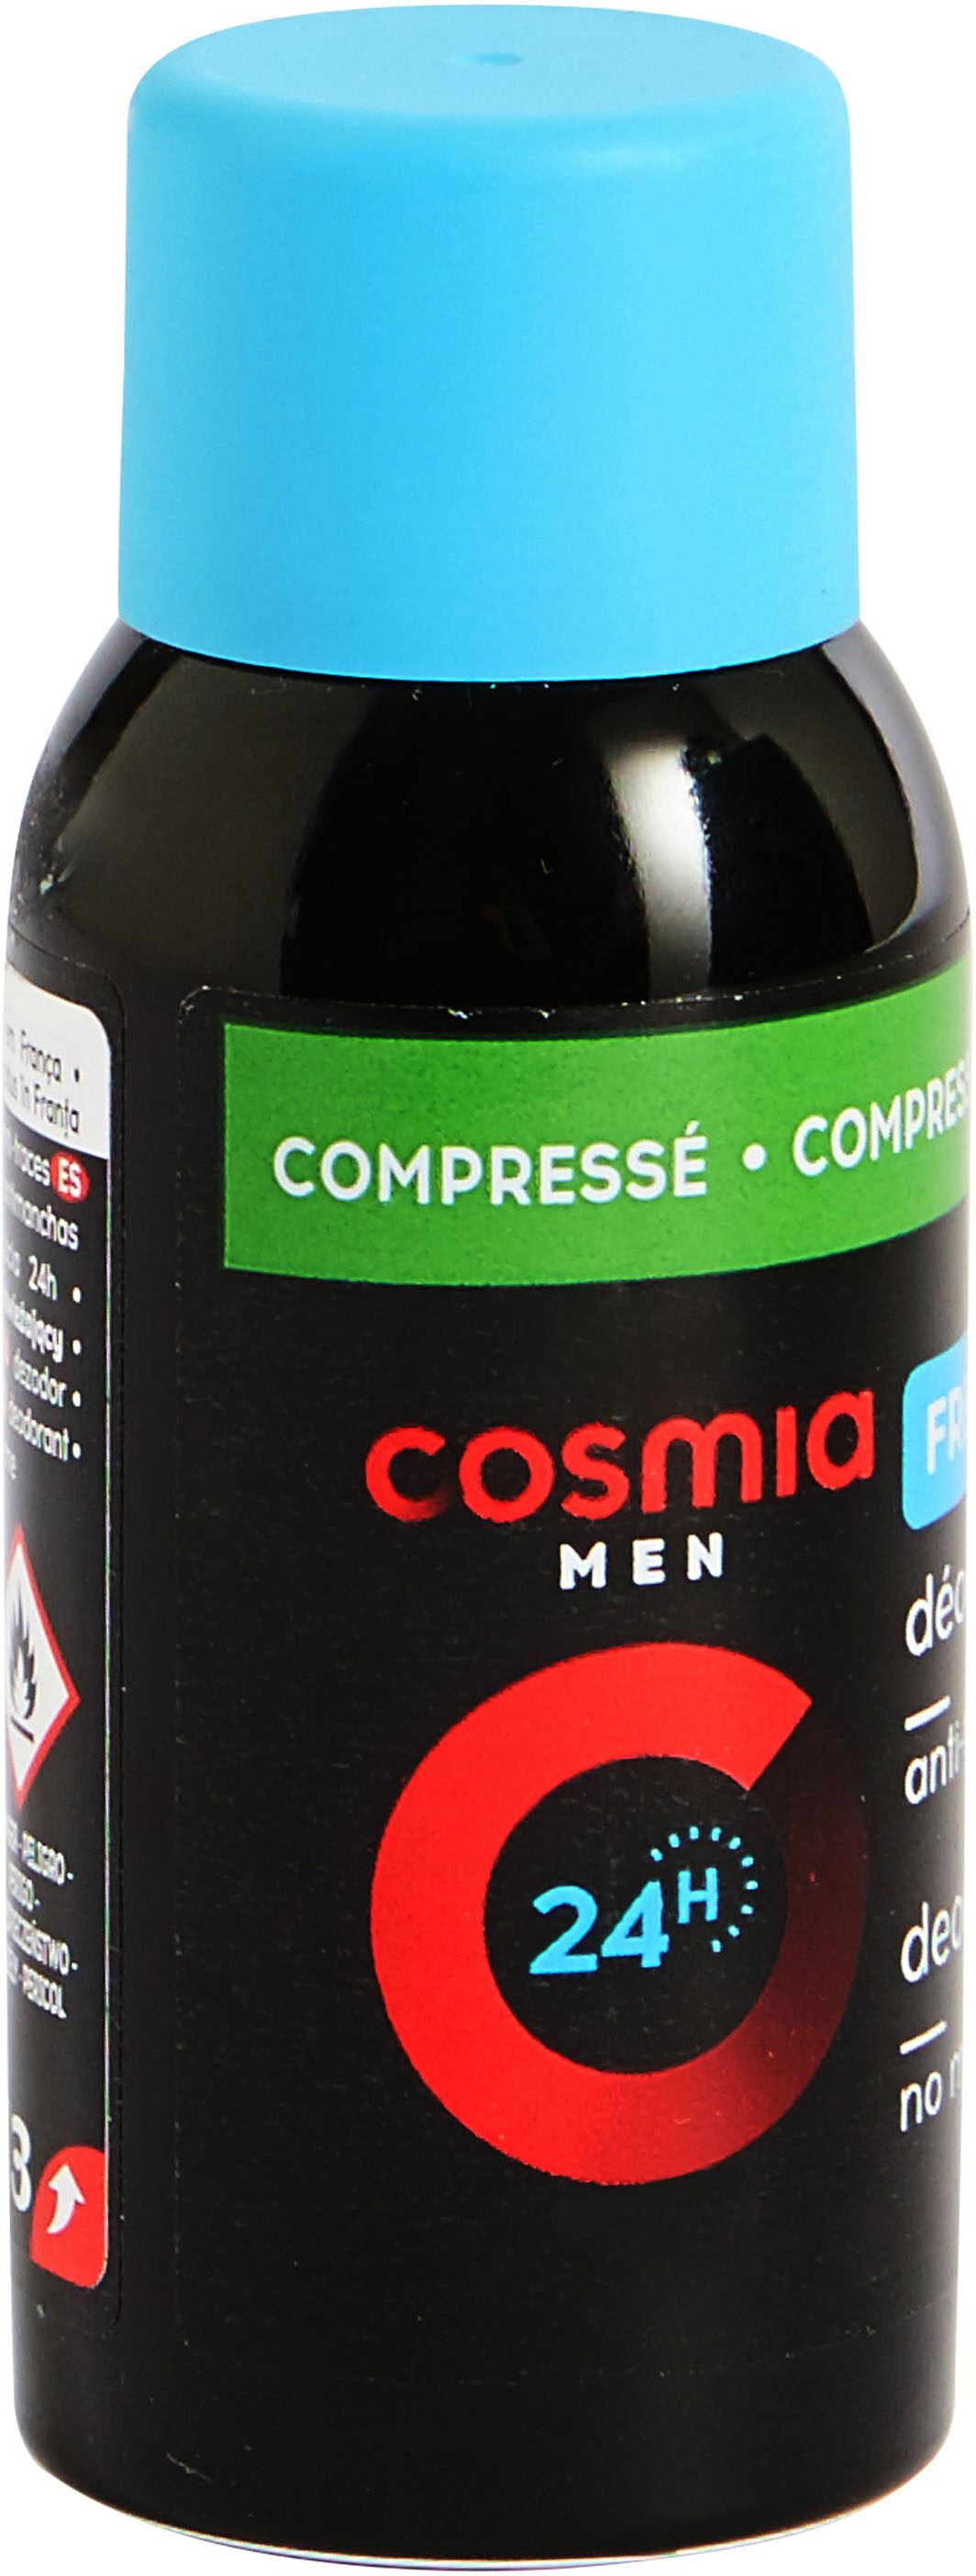 Cosmia deodorant homme atomiseur corps fraicheur 75 ml - Produto - fr